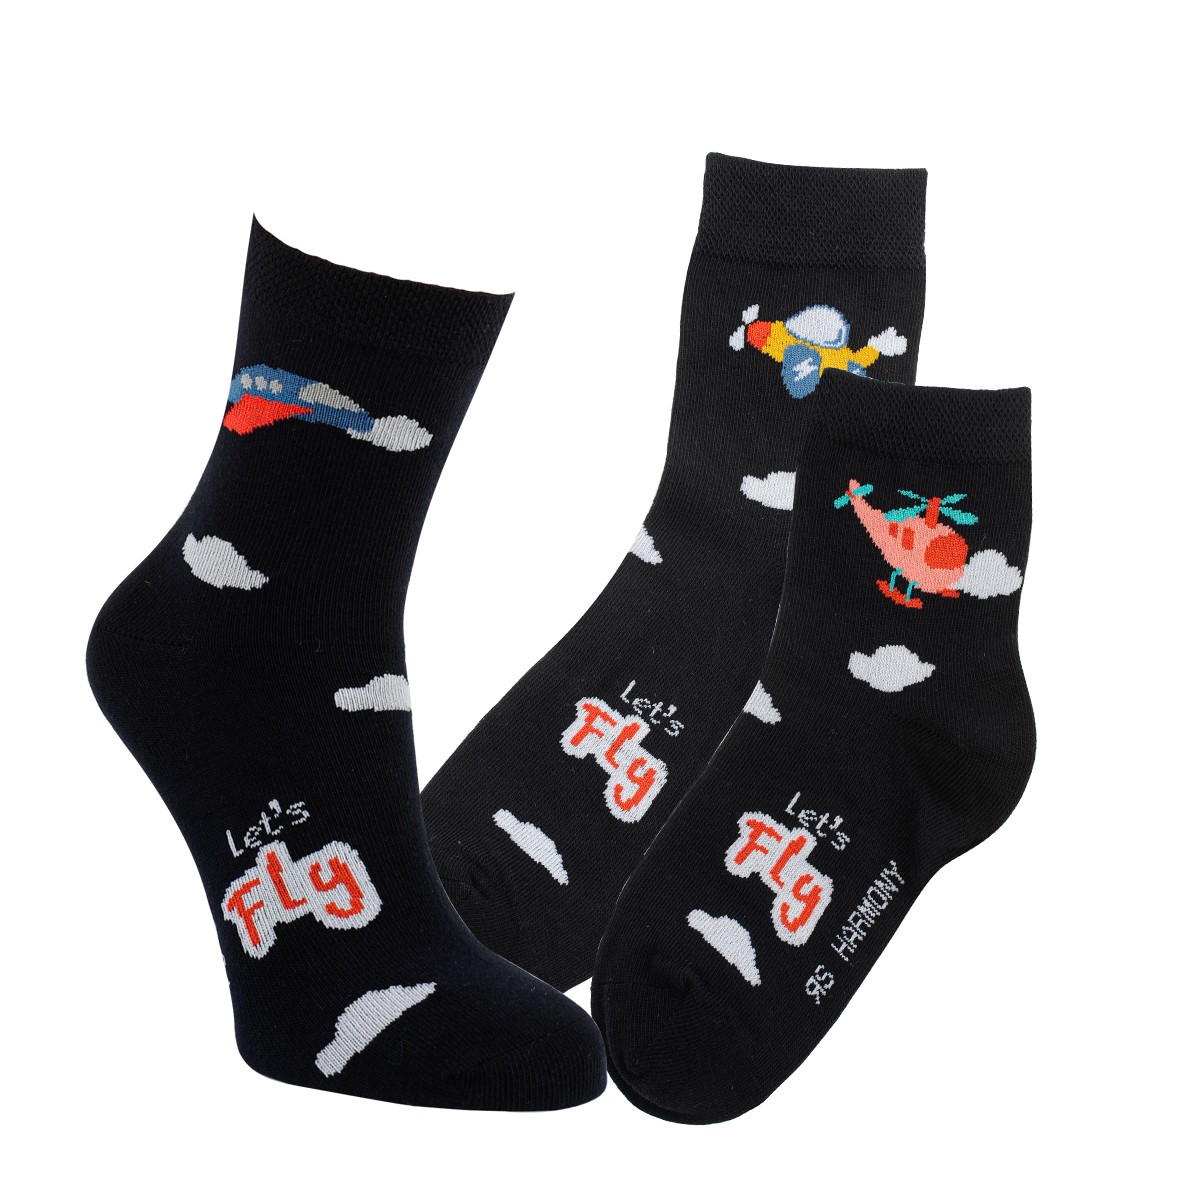 Dětské barevné bavlněné vzorované veselé ponožky RS